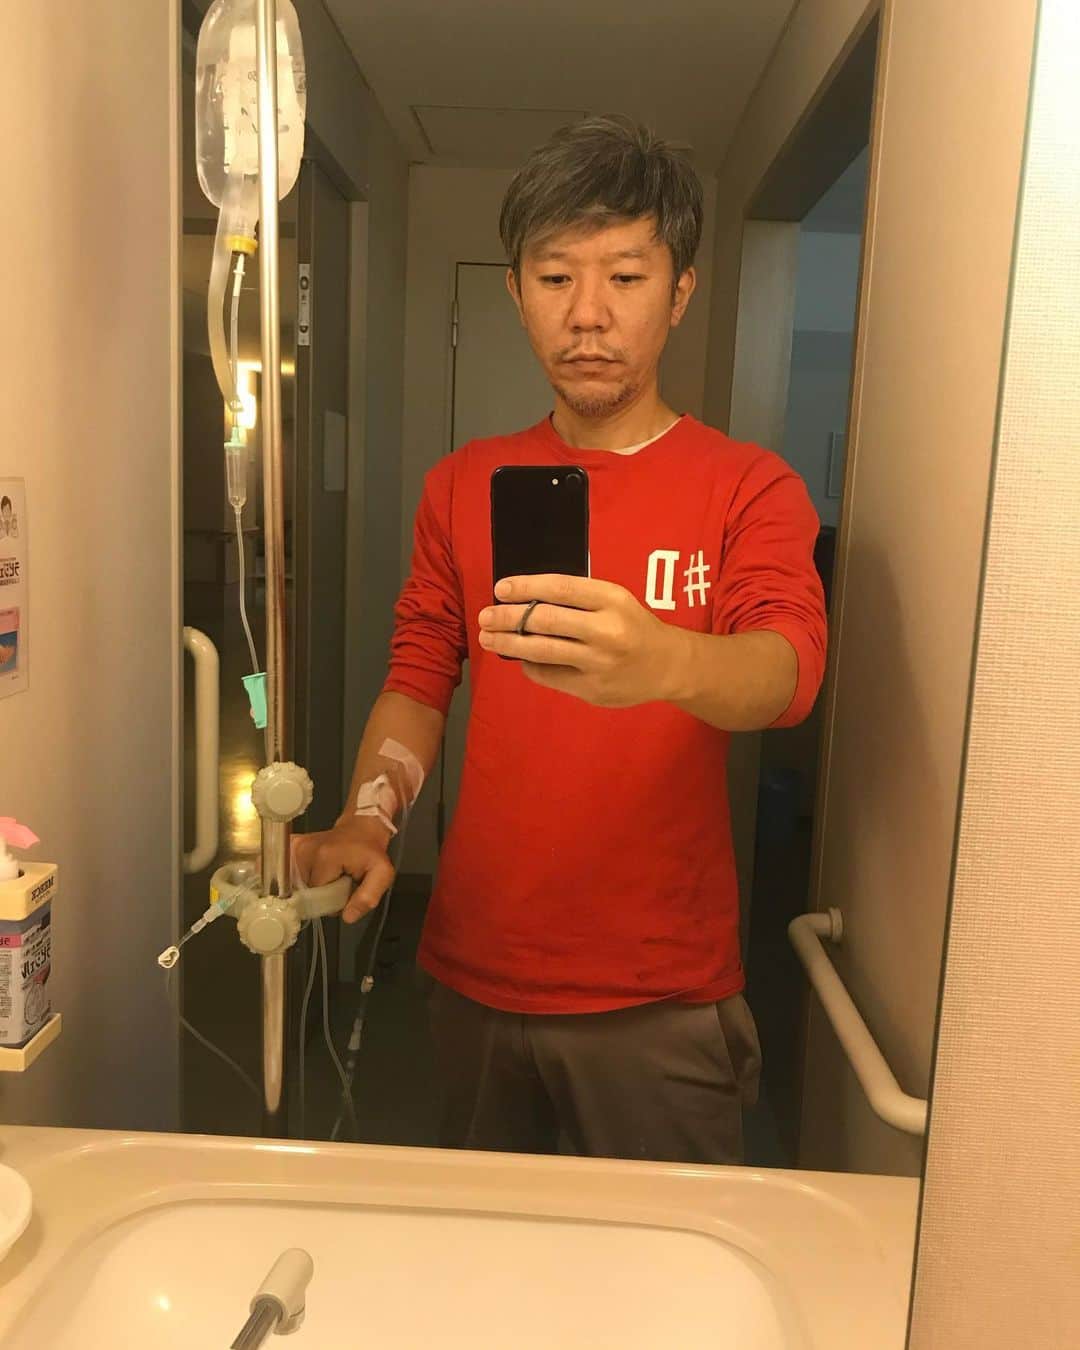 西森洋一さんのインスタグラム写真 - (西森洋一Instagram)「入院四日目､日記2019年 、 ♦︎朝六時起床。 おはよう御座います、起床と同時に「抗生剤」頂いております。 、 もう､美味しいです。　血管からでも､美味しいです。 、 ♦︎9時20分 点滴の針を右腕から、左腕へ移動。　 シンディーローパーみたいなメイクの看護師さんに、針を打ち直してもらいました。 、 全く信用出来なかったが…… 、 突然､歌い出したりもせず、キッチリとした仕事でした。 楽。  右腕が針なしで、非常に楽。　  今までは、歯磨きの時なんて、点滴の管をバッタンバッタンさせて、大暴れで磨いてました。 、 のぼり棒.登ってる時ぐらい、ガシャンガシャンなってたよ。 、 やる事がなさ過ぎて、ほぼ何も食べていないのに……一応､朝晩､歯磨きしてました。　 、 絶食4日目の今日…… なんか口から…固形のゴマサイズの食べかすが出てきたよ…………いつのかしら。 、 お母さん、お元気ですか？　 あの量のガムが……もう……無くなりそうです。　 五個いっぺんに噛んだりと、こちらは､やりたい放題.させて頂いてます。 、 ♦︎16時……特殊工作員、現る。 、　 ヨメが､待ちに待った、塩分を買ってきてくれた。 、 しかし「塩飴」という､おばあちゃんが勧めてきそうな､古臭い味の飴だったので 一口食べて……私……すねました。 私は、戦後まもなくの生まれでは.ありません。　 まるで、おばあちゃんと、接しているようだ。 、 昔､本当のおばあちゃんに、、 タミヤ製では無い､探してくる方が難しいやろ！ という様な、、 見た事のないミニ四駆を、買ってこられた時の事を思い出しました。 、 あの時も……小2の私……すねました。 、 現代の西森が、余りにもスネるので、ヨメが男梅のグミを買って来てくれました。 このグミは､飴のように舐めるだけで､溶けていくタイプのものです。 助かりますし、滅茶苦茶嬉しい。　ほんで滅茶苦茶旨い、今晩で1袋無くなりそうです。 、 ヨメはついでに、三ツ矢サイダーキャンディも買って来ていた。　 でも、それは「別に」って感じです。　 、 もう既に俺は､糖分を含む飲み物、、 「午後の紅茶のストレートティー」を手に入れたのだから……って感じです。 、 、 ♦︎17時……今、フリースペースで､溜まりまくった10月の日記の追い上げをしています。 作業中……シンディーローパーから交代した看護師さんに、お腹と大便の調子を訊かれました。 、 腹痛は無いが、まだずっと便はシャーシャーだという旨を伝える。 、　 「そうですかぁ……じゃあ、次出たら見せてくださいね！」 『分かりました』 ………と……一応答える。　 、 でも思う。 、 なんで？　いや､なんで？　　嫌だ。　見て欲しく無い。　というか、見てどうなる？ 頭で想像したものと､全く同じものが便器にあるだけだ。　意味が無い。　意味が無いのに、何故見たいの？。 ただ僕が、恥ずかしいだけ。　 、 そして、その用意が出来た時……何と言って見せれば良いのだ。 、 「どうぞ、こちらです、これが例のものです」 『は〜い、分かりました〜』 「これ……見る意味ありました？」　 、 と、なって終わりだ。　見せないでおく方法を､色々考える。 、 、 ♦︎なんやかんやで、今は､20時30分です。 シャバシャバウンコは出ましたが、内緒にしています。　 、 ふふふ。 、 ウンコしたことを､内緒にする40歳です。 もう少しすれば、看護師さんが交代するので、そうなればもう､こっちのものです。 、 ウンコフリーの到来です。  ♦︎22時……ガム残り僅か、、本当に無くなりそうです。　 嫌だ。明日も売店は休み。　ヨメは来ない。　 、 男梅グミ、キシリトールガム、三ツ矢サイダーキャンディ、の、無限ループに突入しています。 、 NGKの舞台袖なんかにも､大量に用意されている「三ツ矢サイダーキャンディ」。 、 それ見て、いつも思っていた。　 、 これ誰が舐めてんねん！　カゴに山盛り入ってるけど、補充すんの年1回やろ！ 誰かが舐めてるところ、1回も見たことないわ！ 、 思っていた。　 、 しかし今は 「うわ〜、もう少しで三ツ矢サイダーキャンディがなくなってまう、どうしよう」という状態。  、 ほんで、めちゃくちゃ旨いし。　 、 お母さん､お元気ですか？ 飴舐めすぎて…口の上側が、削れて血が出そうです。 2ついっぺんに､口に入れて…… ゴロゴロいわせながら、右回り、左回りなどと、やりたい放題､やらせて頂いております。 、 、 そして又、抑揚のない一日が終わる。　 、 男梅のグミを「これは明日の分！」と取り分けてから就寝。 、 絶食96時間､突入。 、 、 おやすみなさい。  こんな感じの本 #声を出して笑っていただきたい本 #超人間観察 買ってね。amazonでもいけます。」4月10日 11時38分 - nishimori_monster